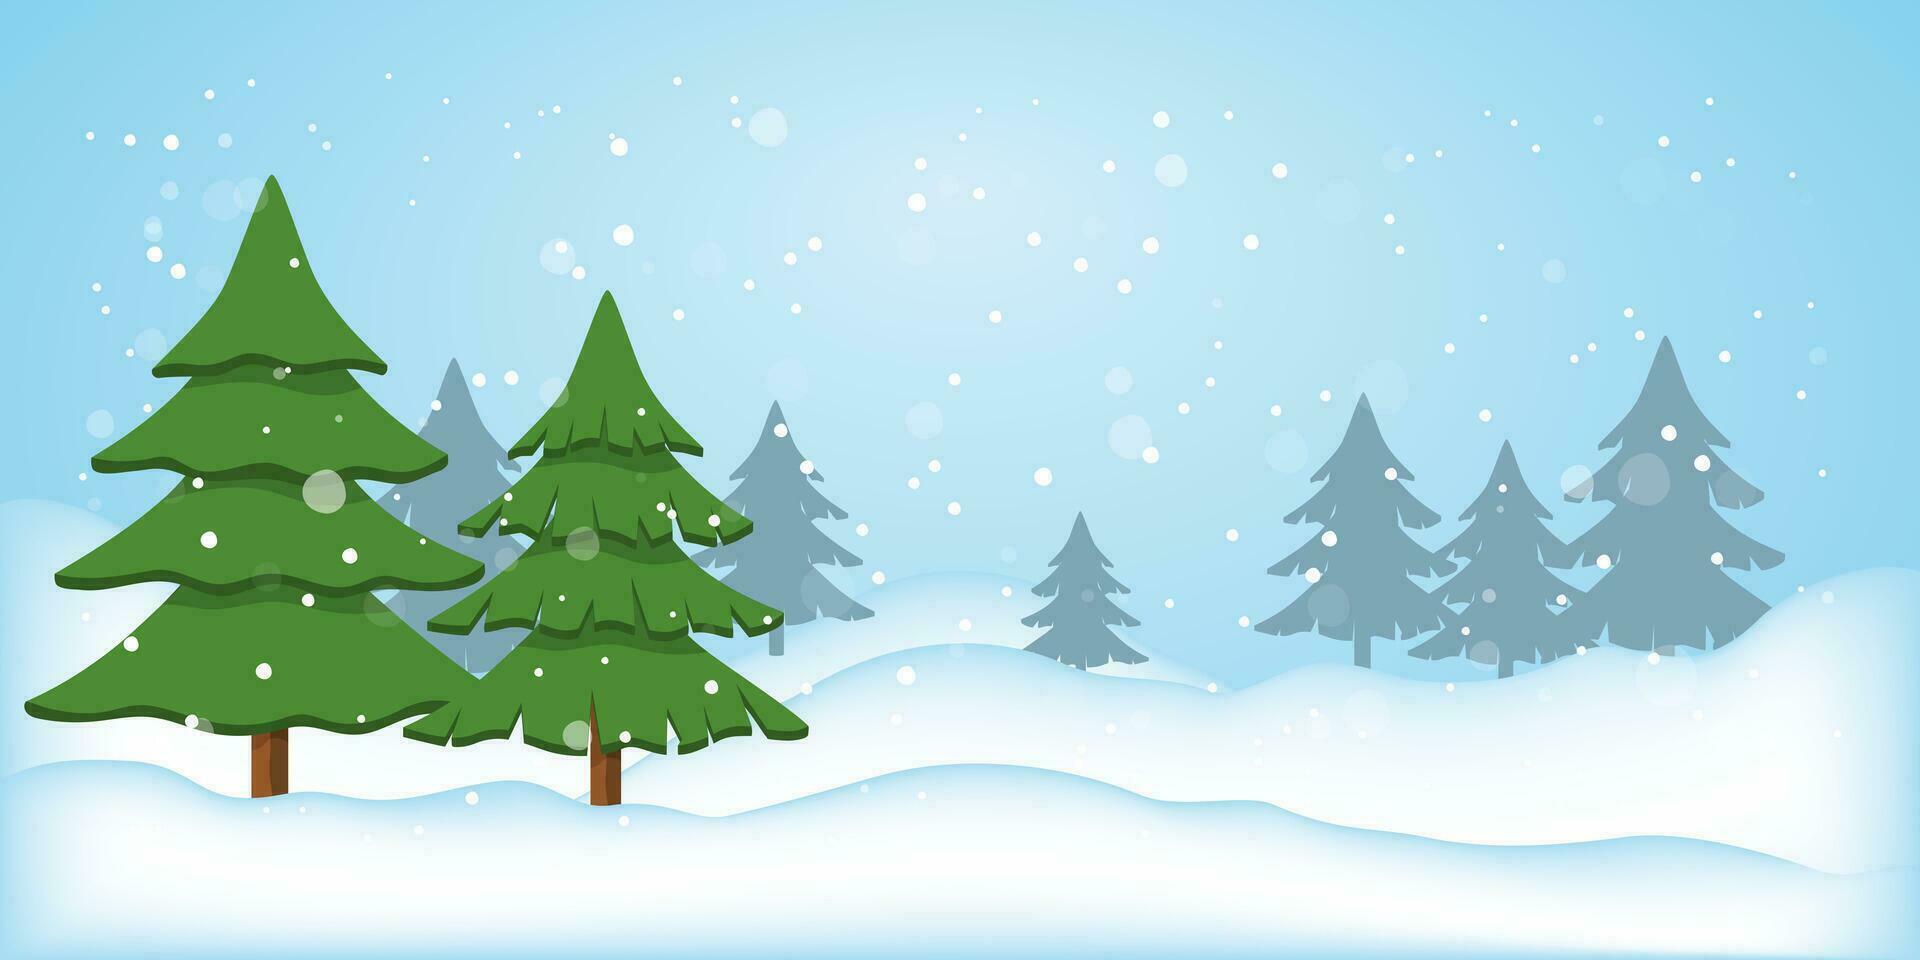 vinter- landskap med gran träd, silhuett av en barr- skog, faller snö. snö bakgrund med plats för text för jul, ny år. natur i vinter. vektor illustration.